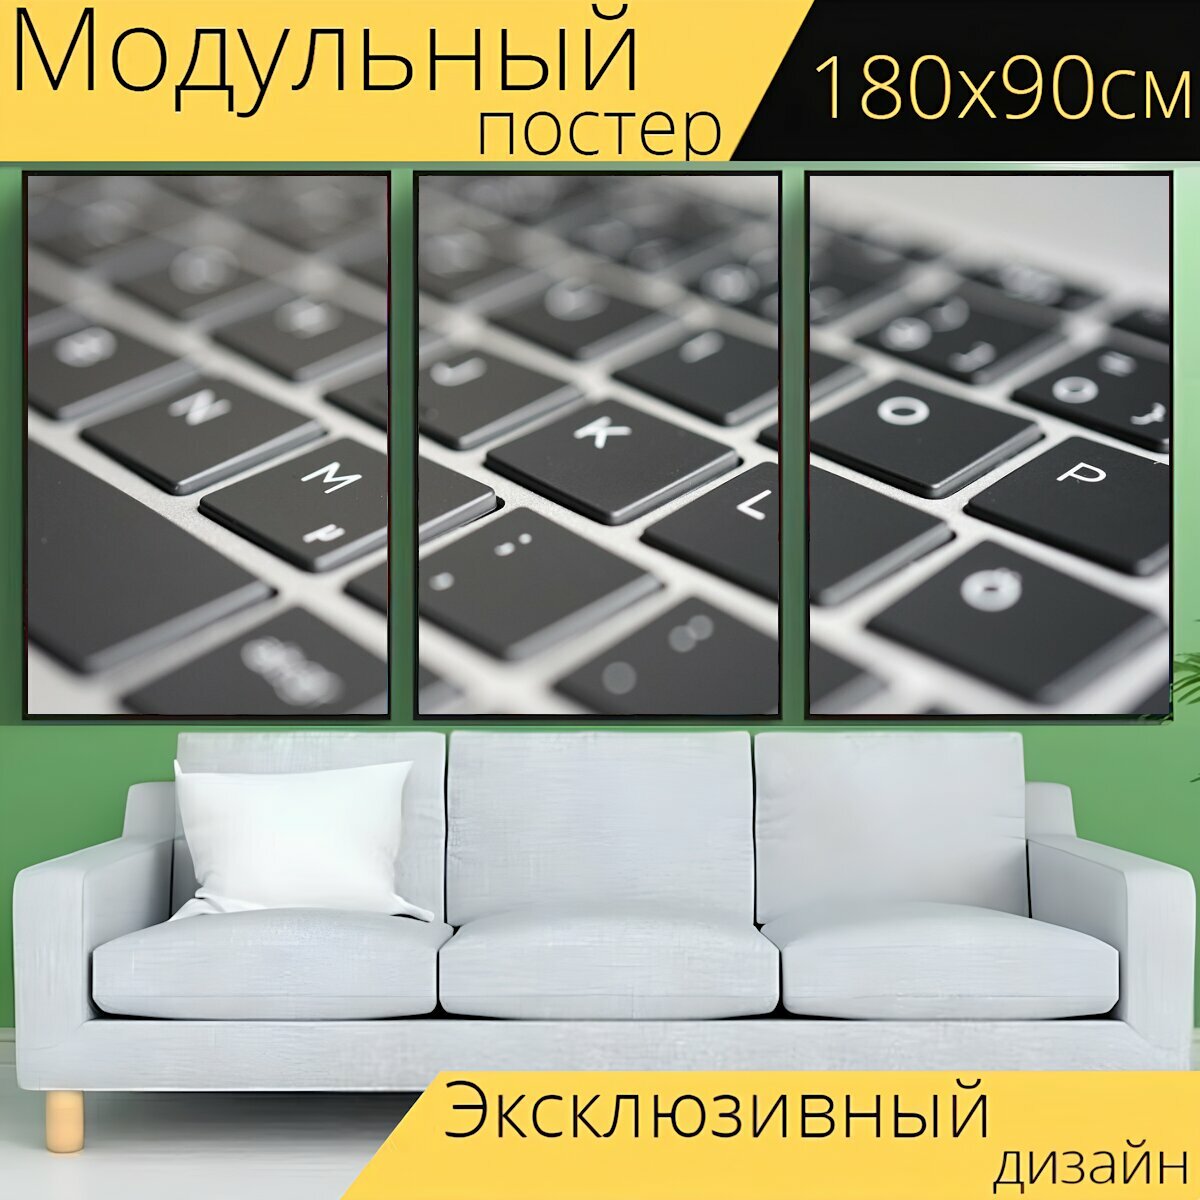 Модульный постер "Клавиатура, ноутбук, введите" 180 x 90 см. для интерьера